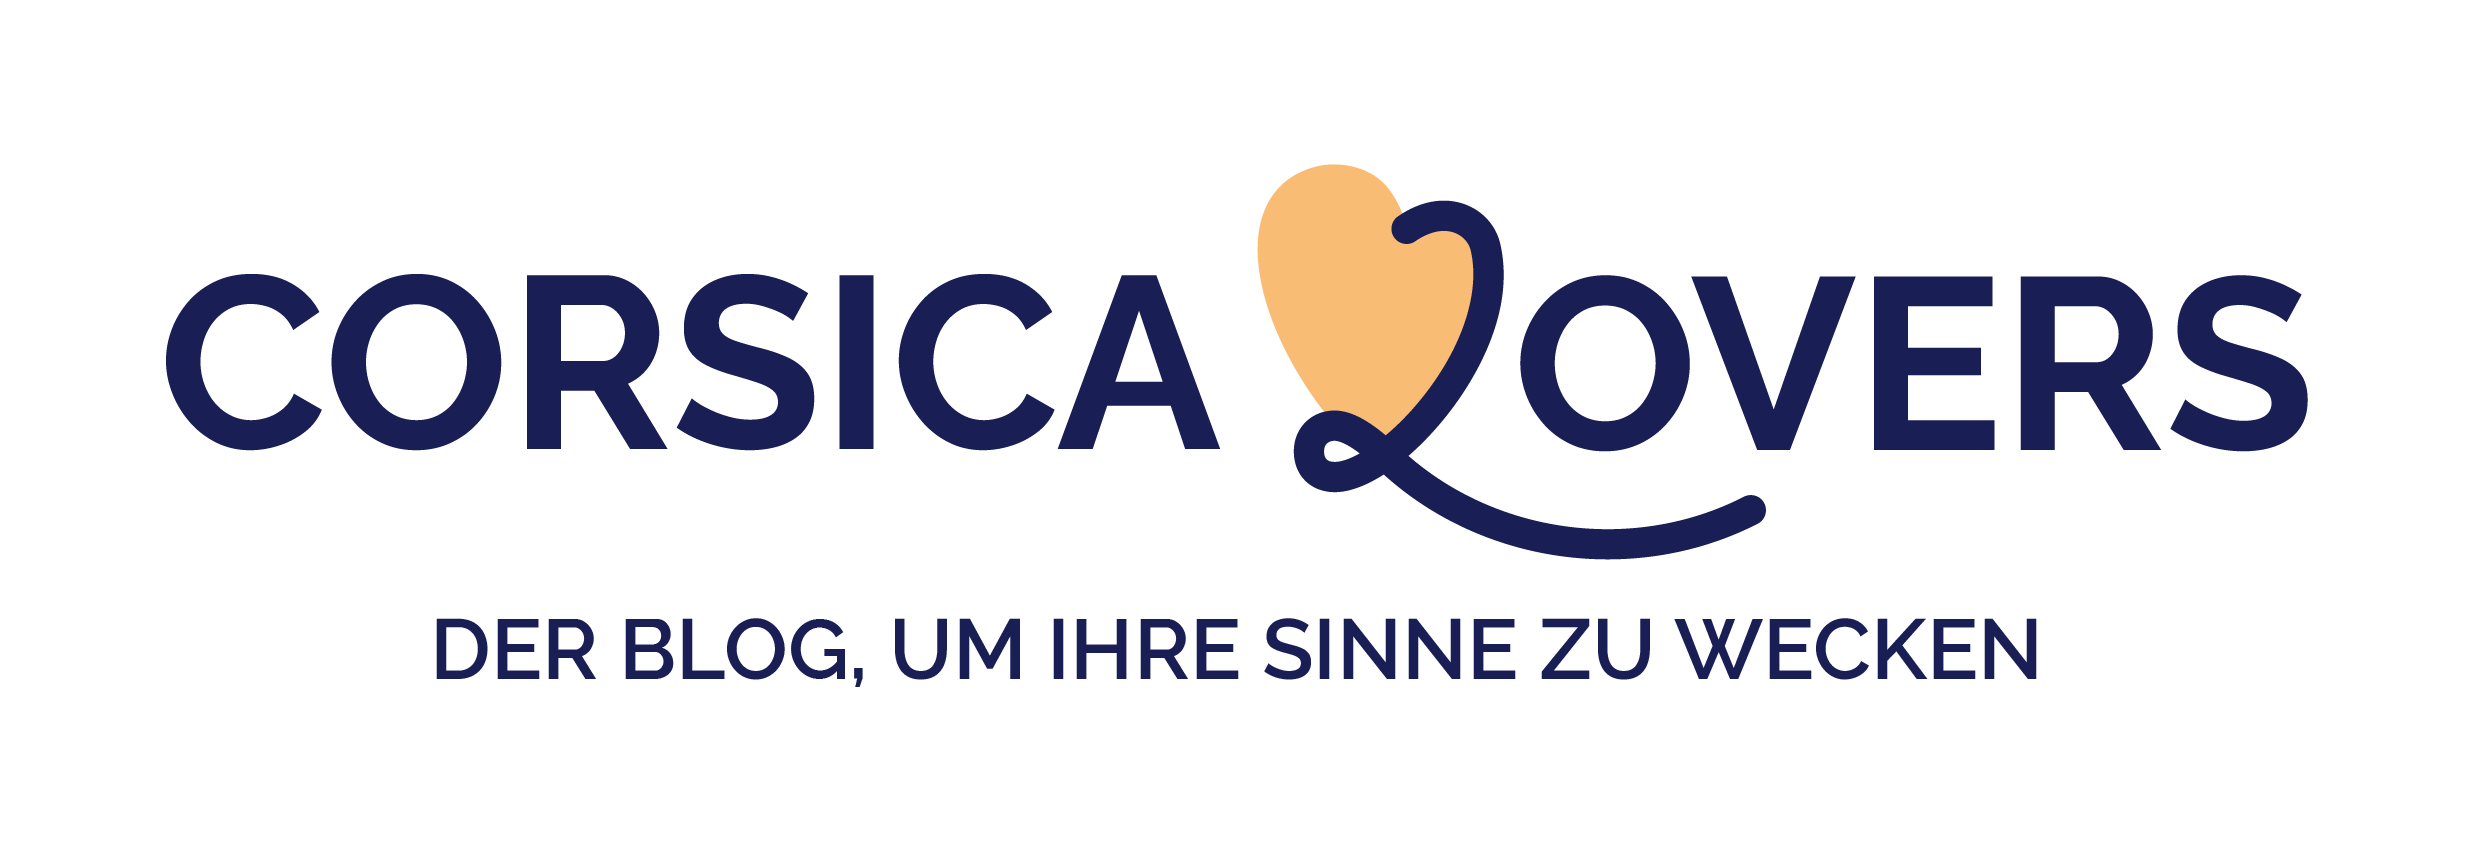 Blog Corsica Lovers Logo DE